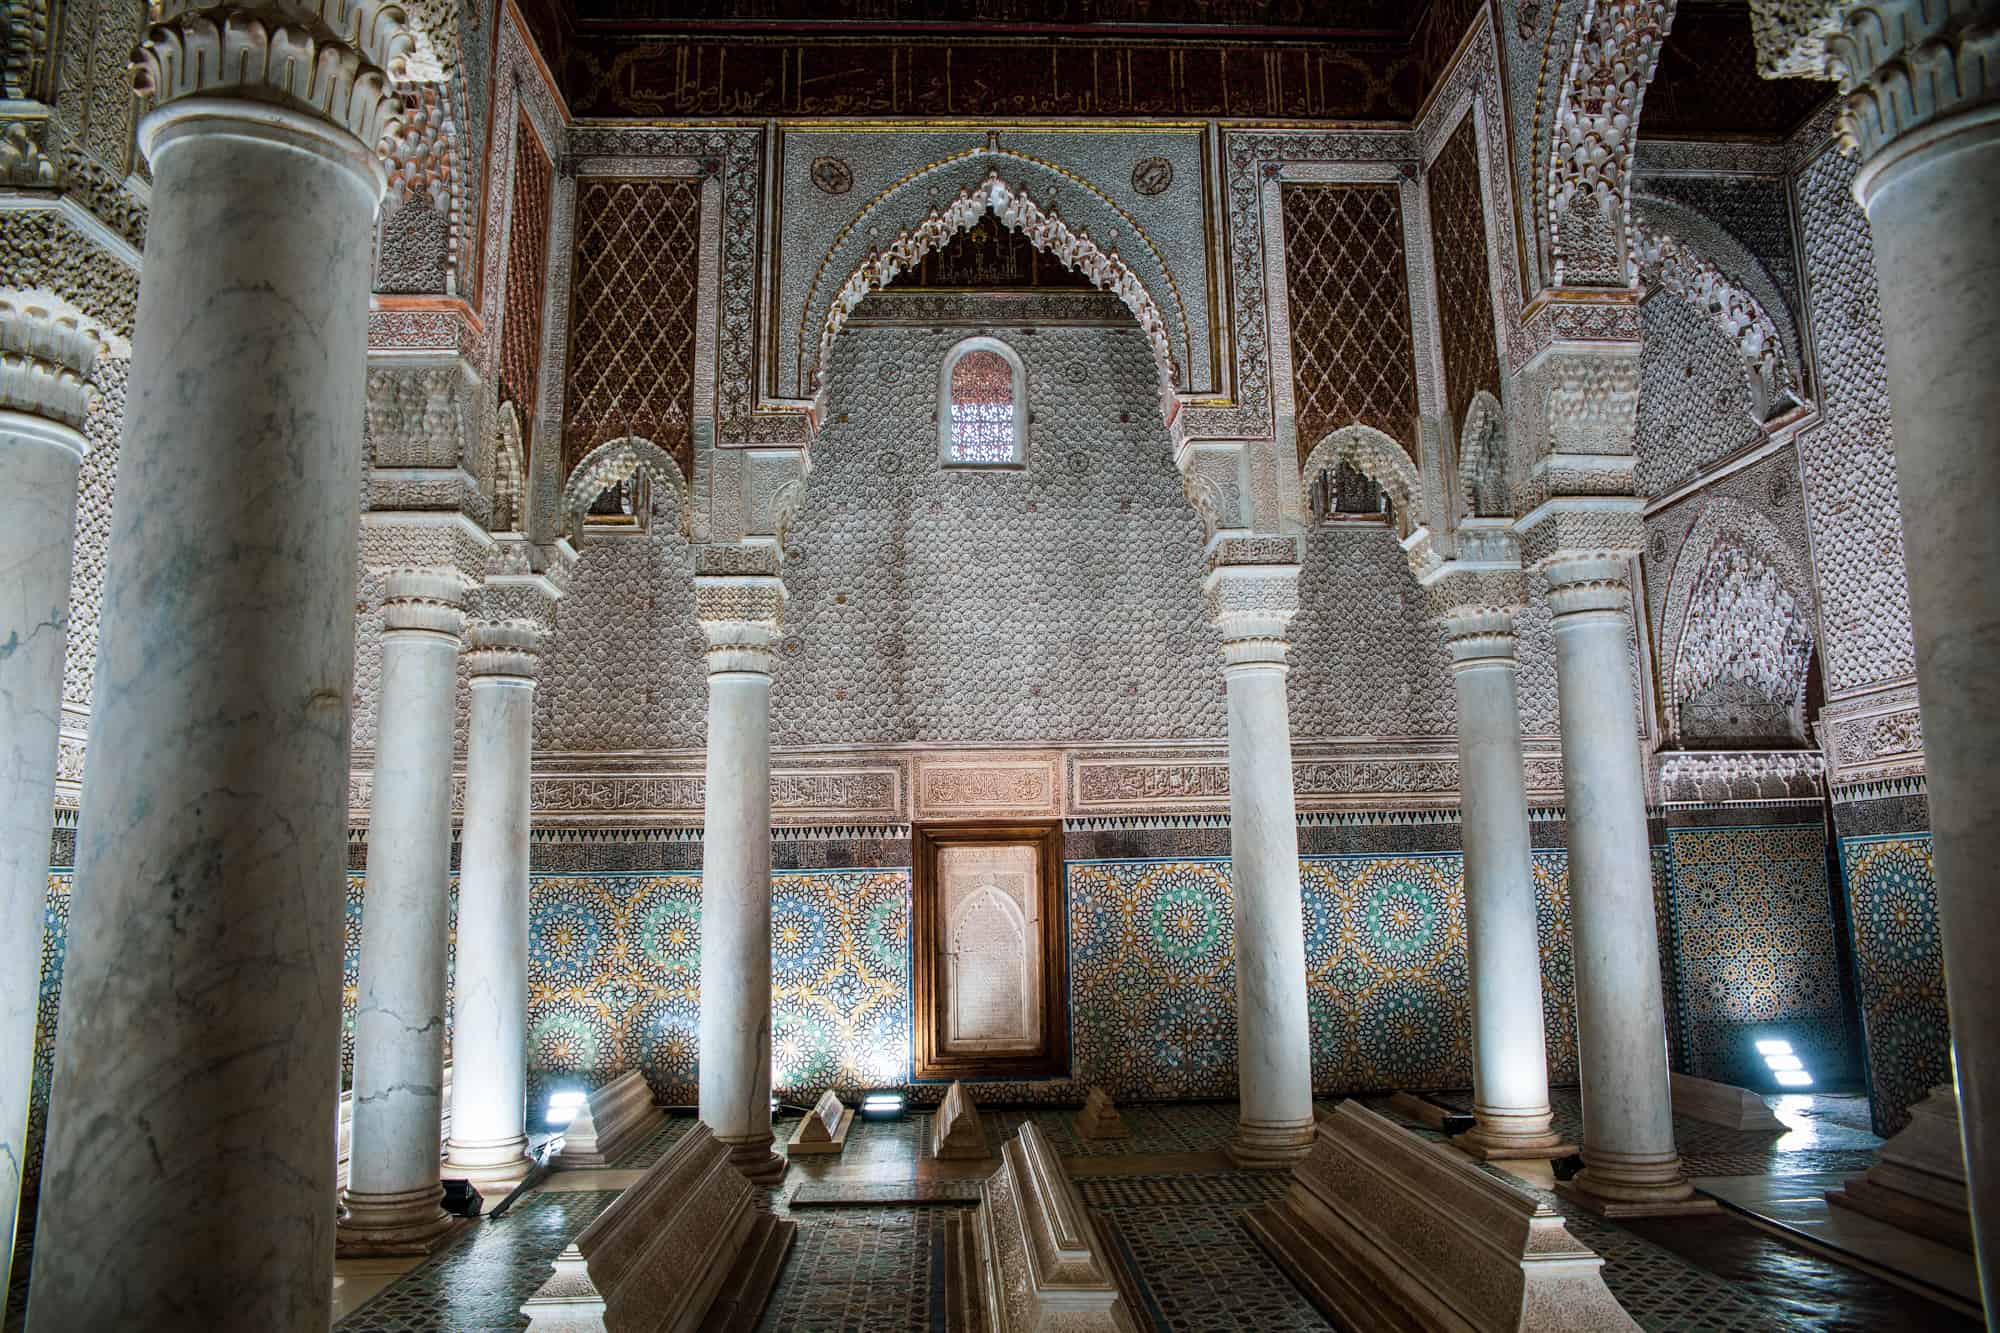 Tombes Saadiens, Marrakesh